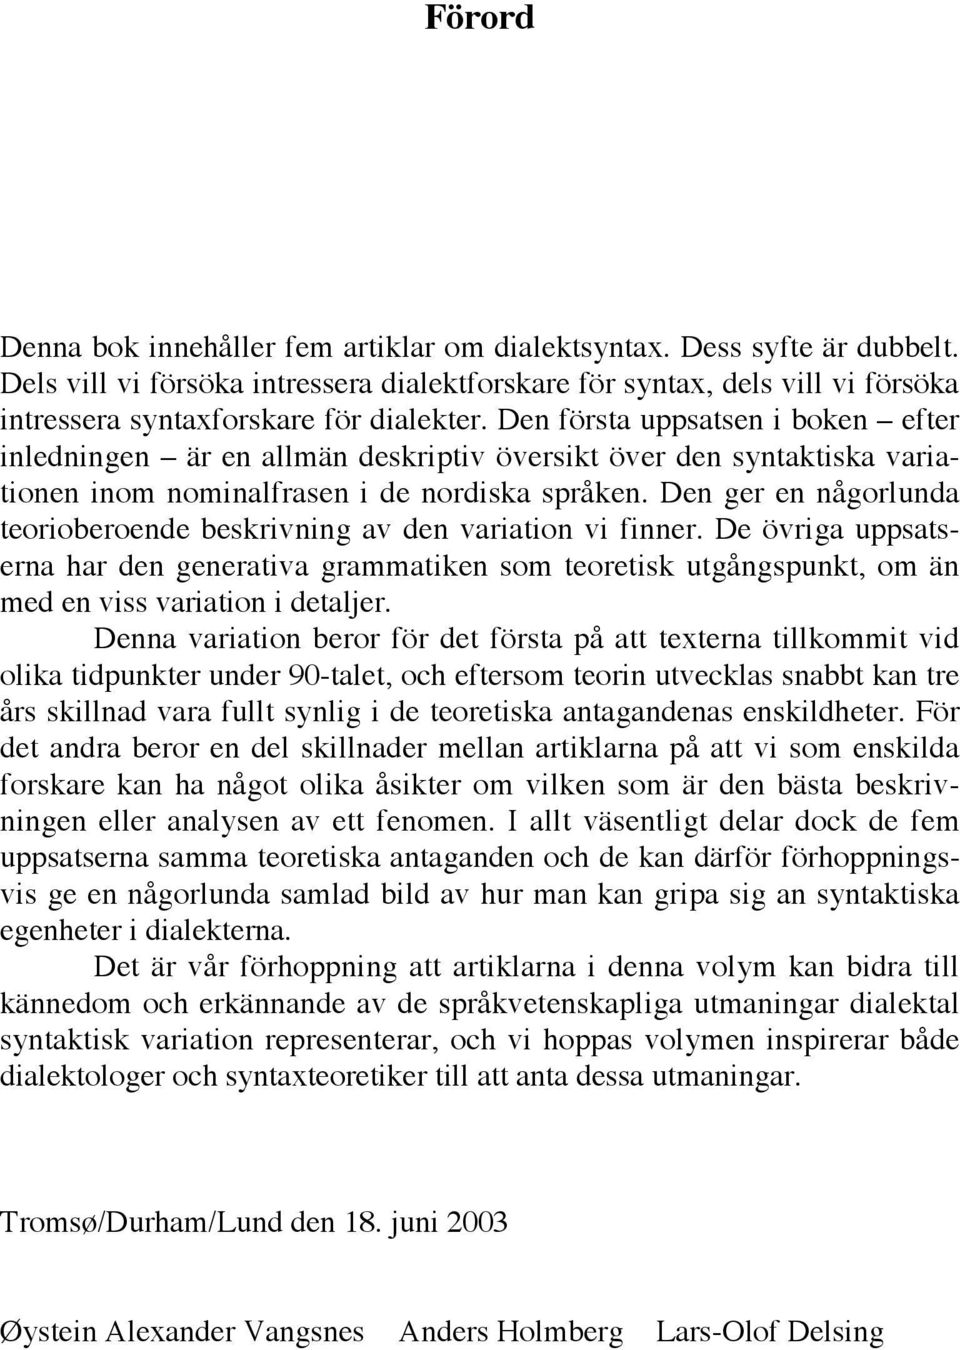 Den första uppsatsen i boken efter inledningen är en allmän deskriptiv översikt över den syntaktiska variationen inom nominalfrasen i de nordiska språken.